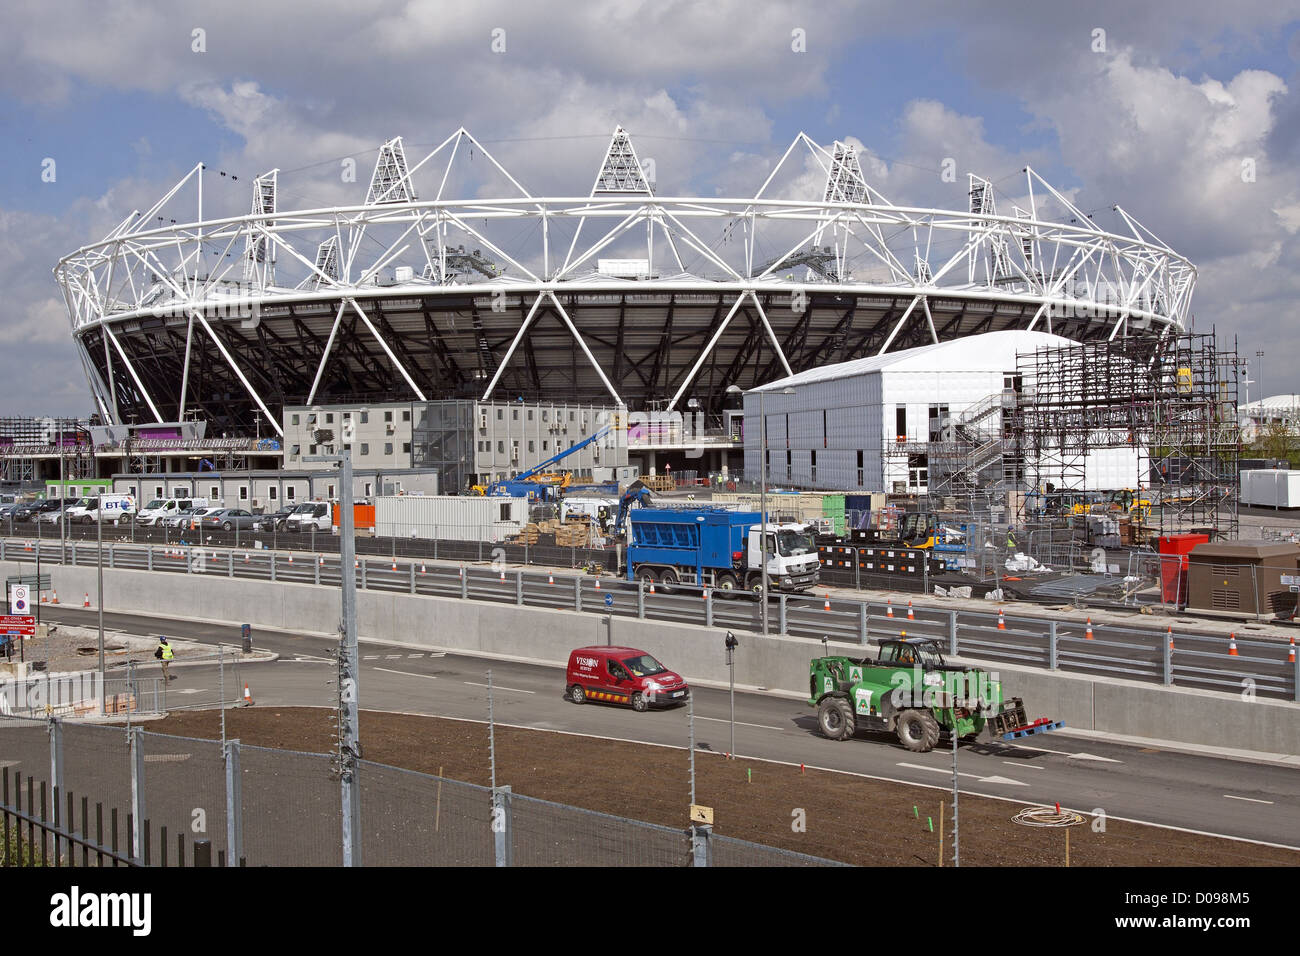 Lavori di costruzione attorno allo stadio olimpico che sarà in grado di ospitare i Giochi olimpici di Londra nel 2012 Londra Inghilterra GRAN BRETAGNA Foto Stock